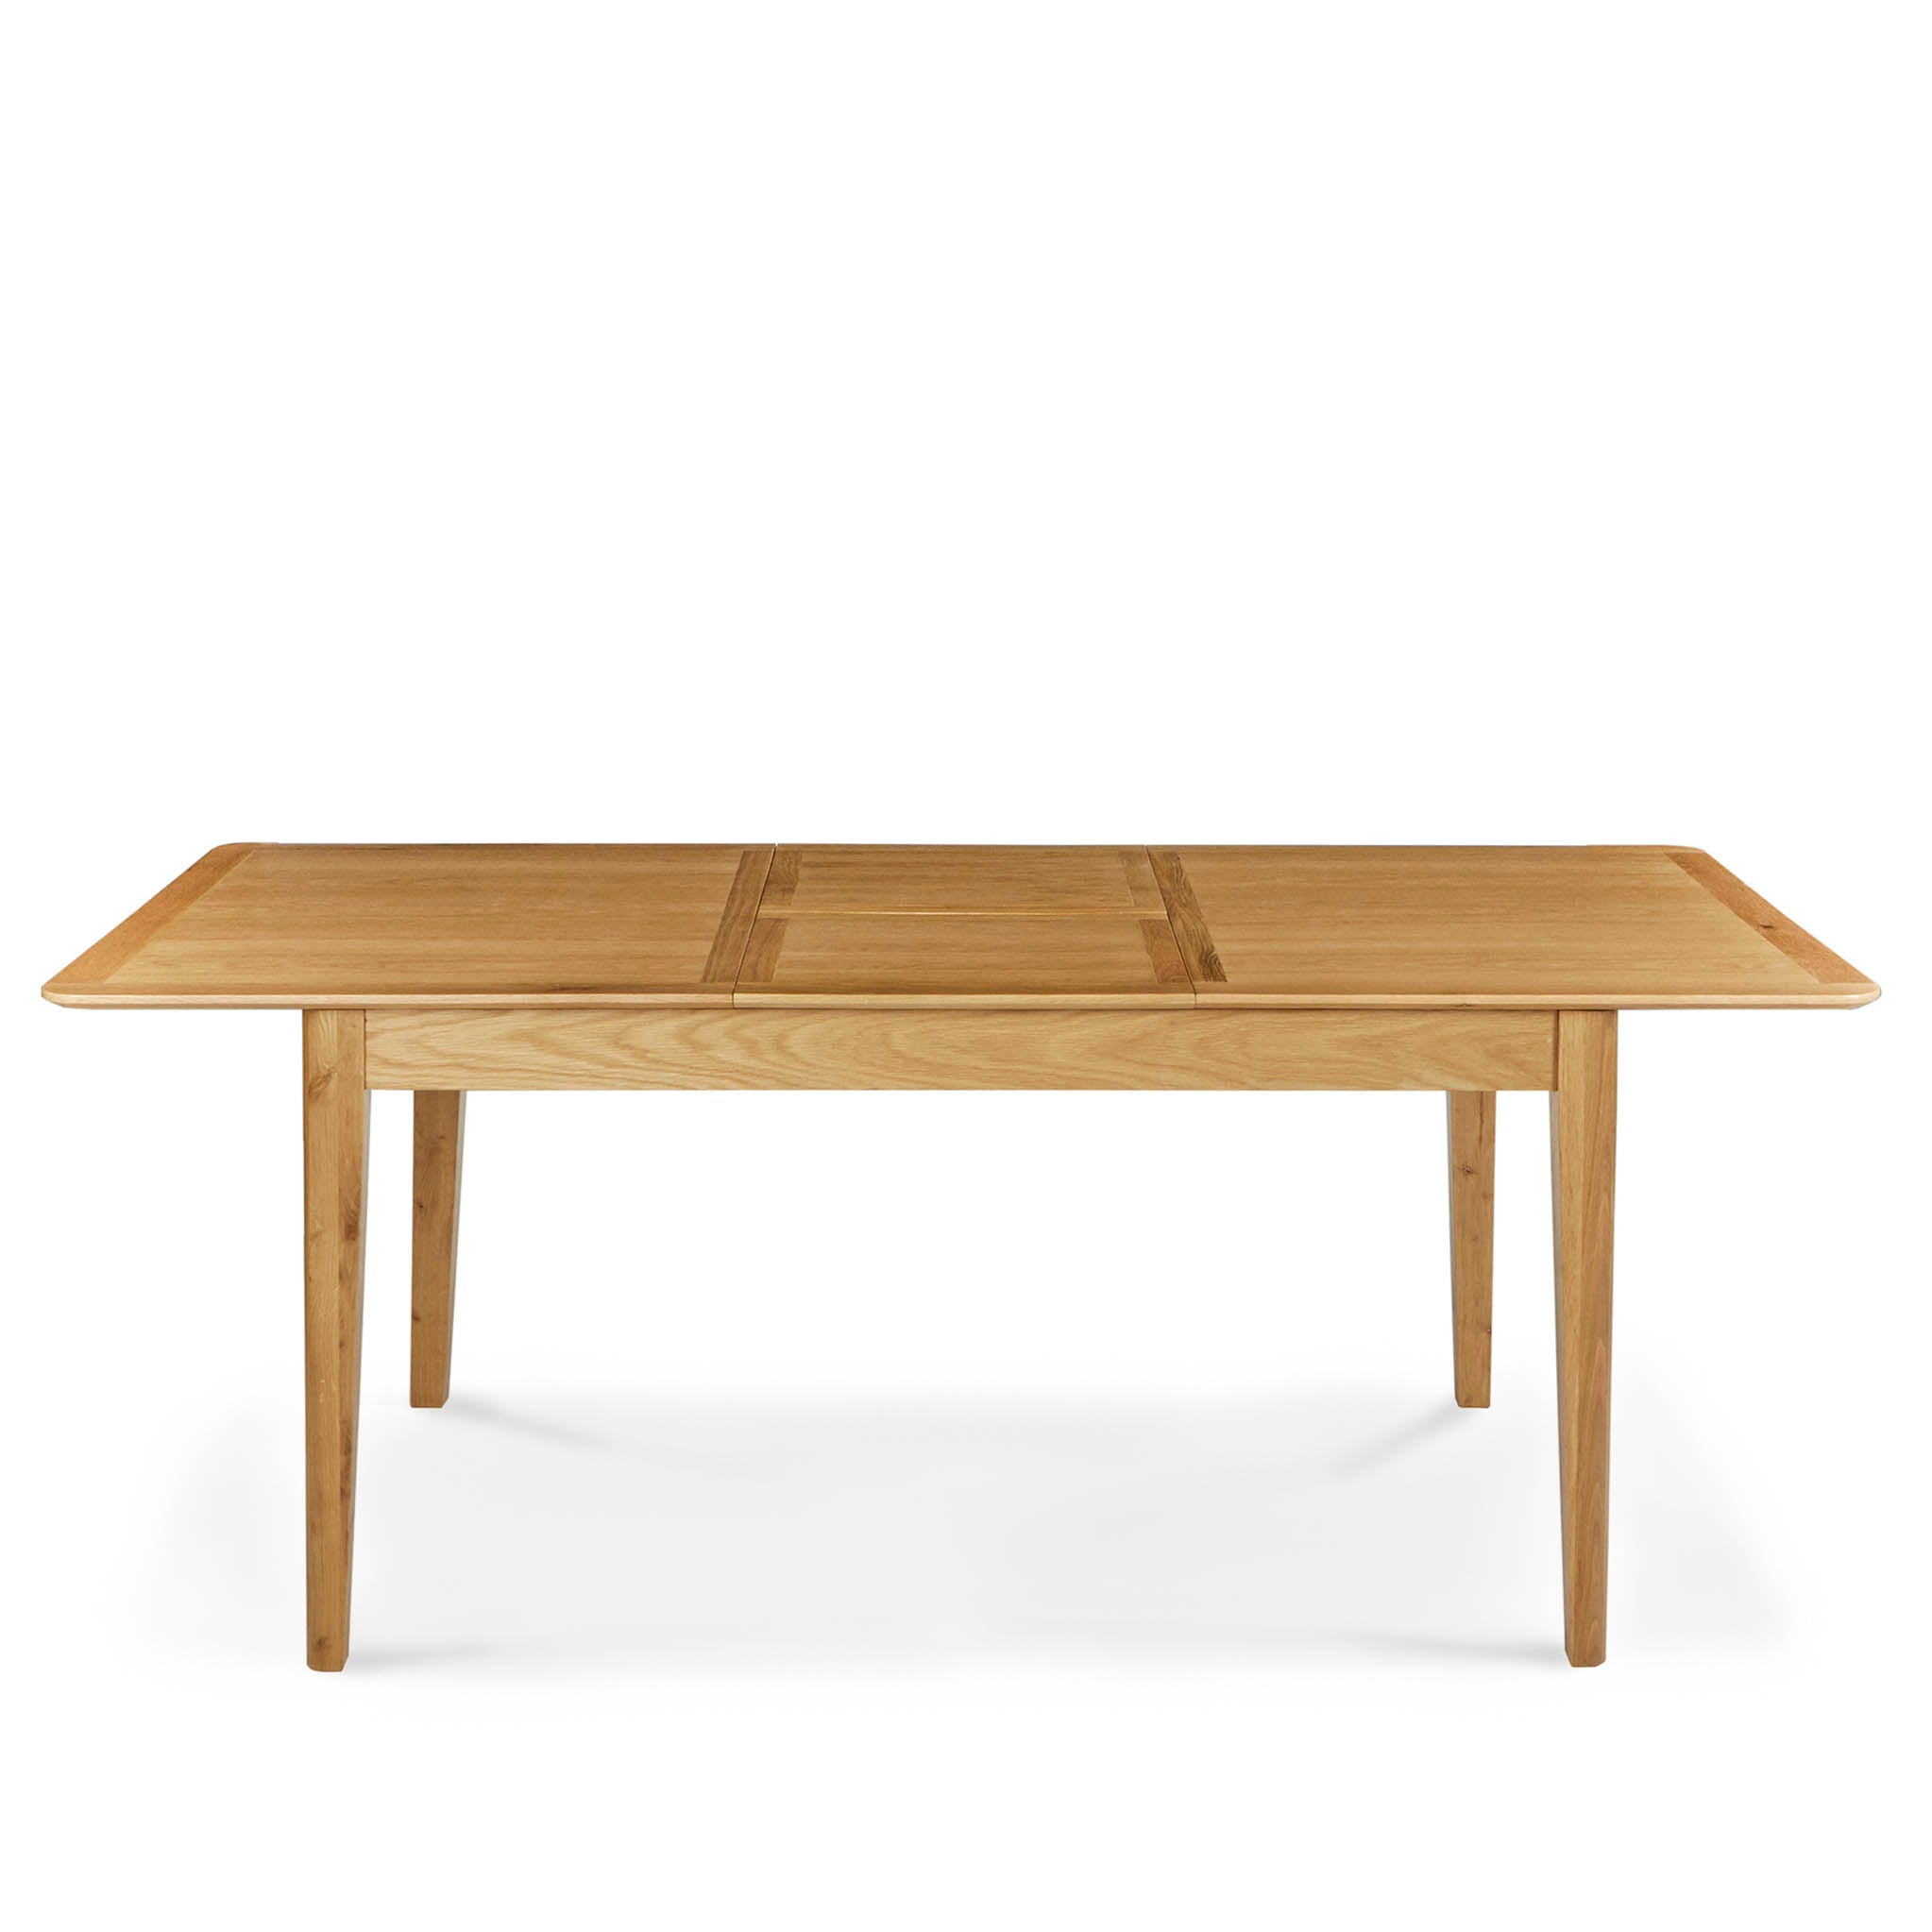 Alba Oak 150 200cm Extending Table